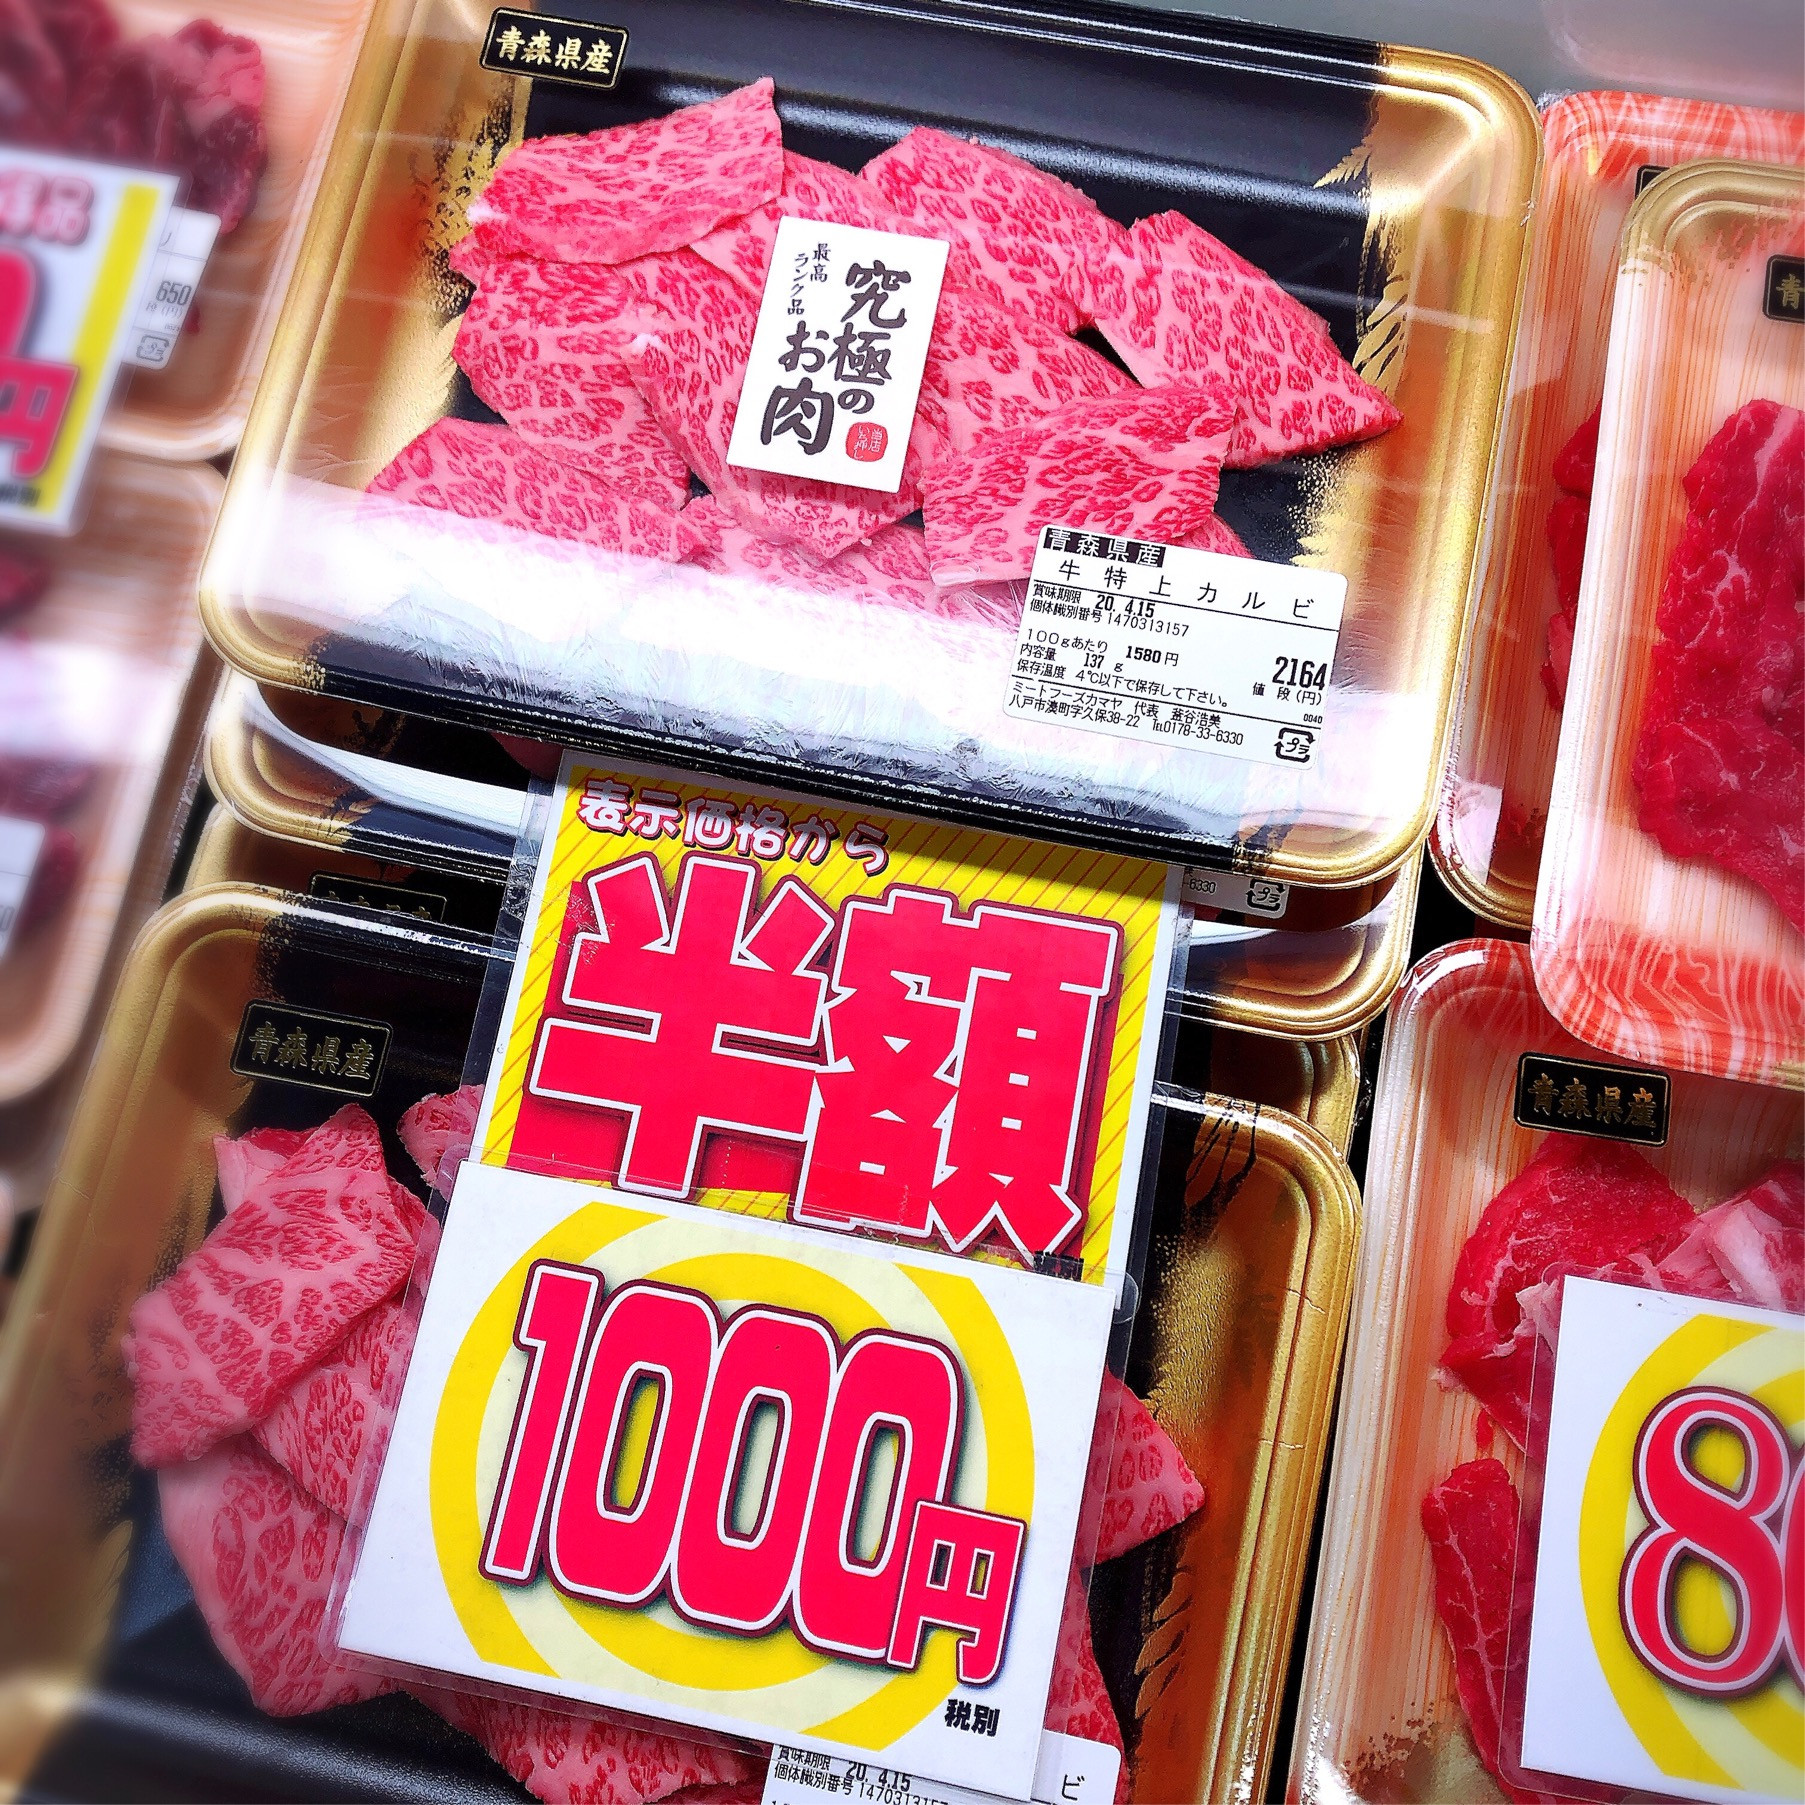 本日は青森県産牛特上カルビがお買得です。